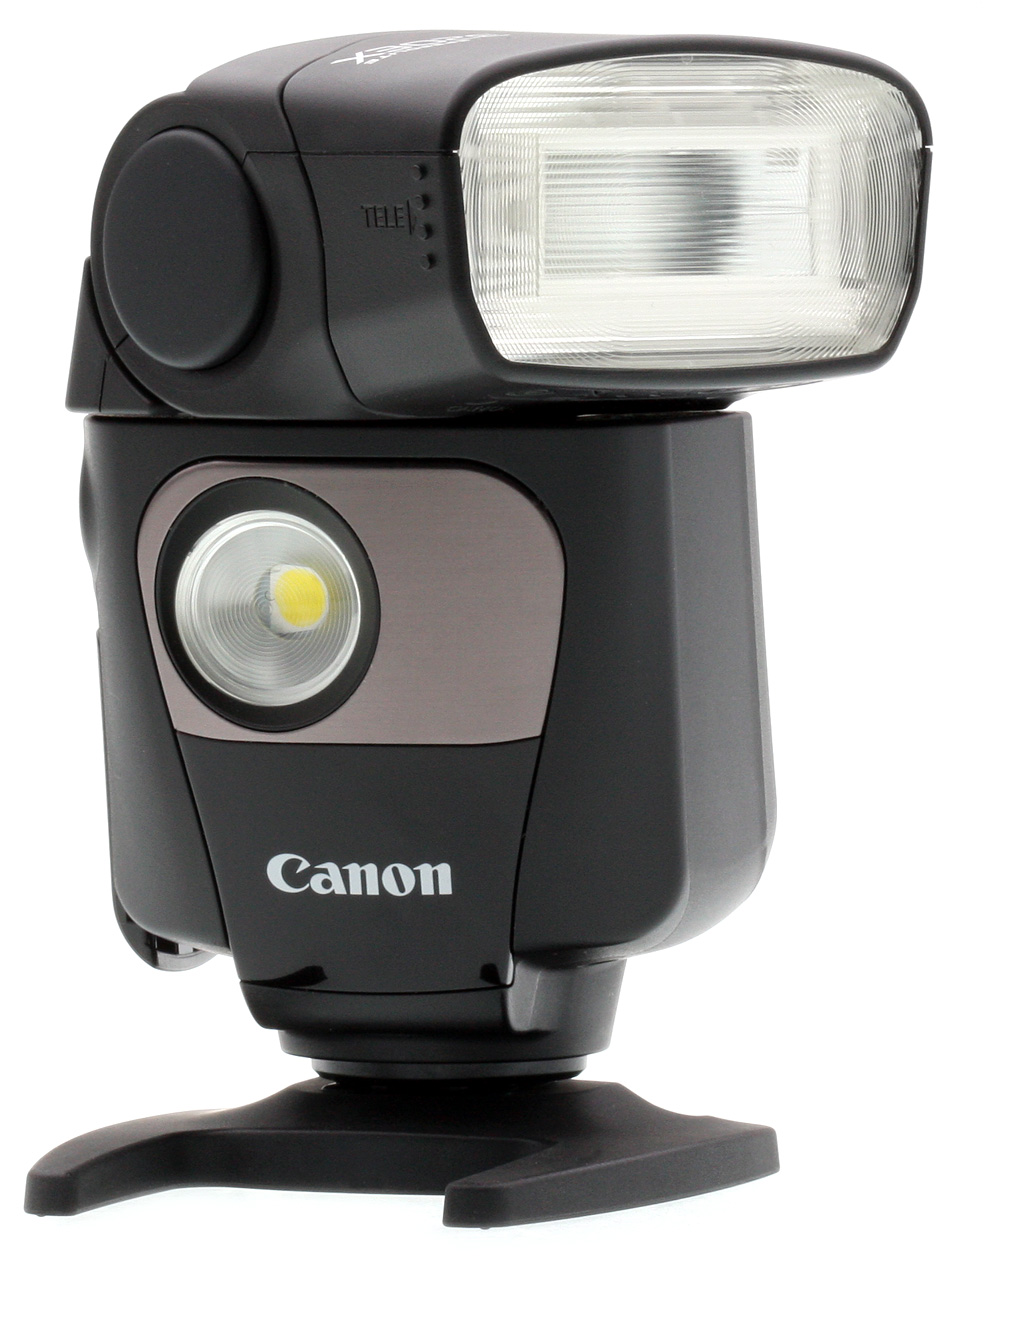 Canon EOS 200D, análisis (review): Una réflex “diferente” para